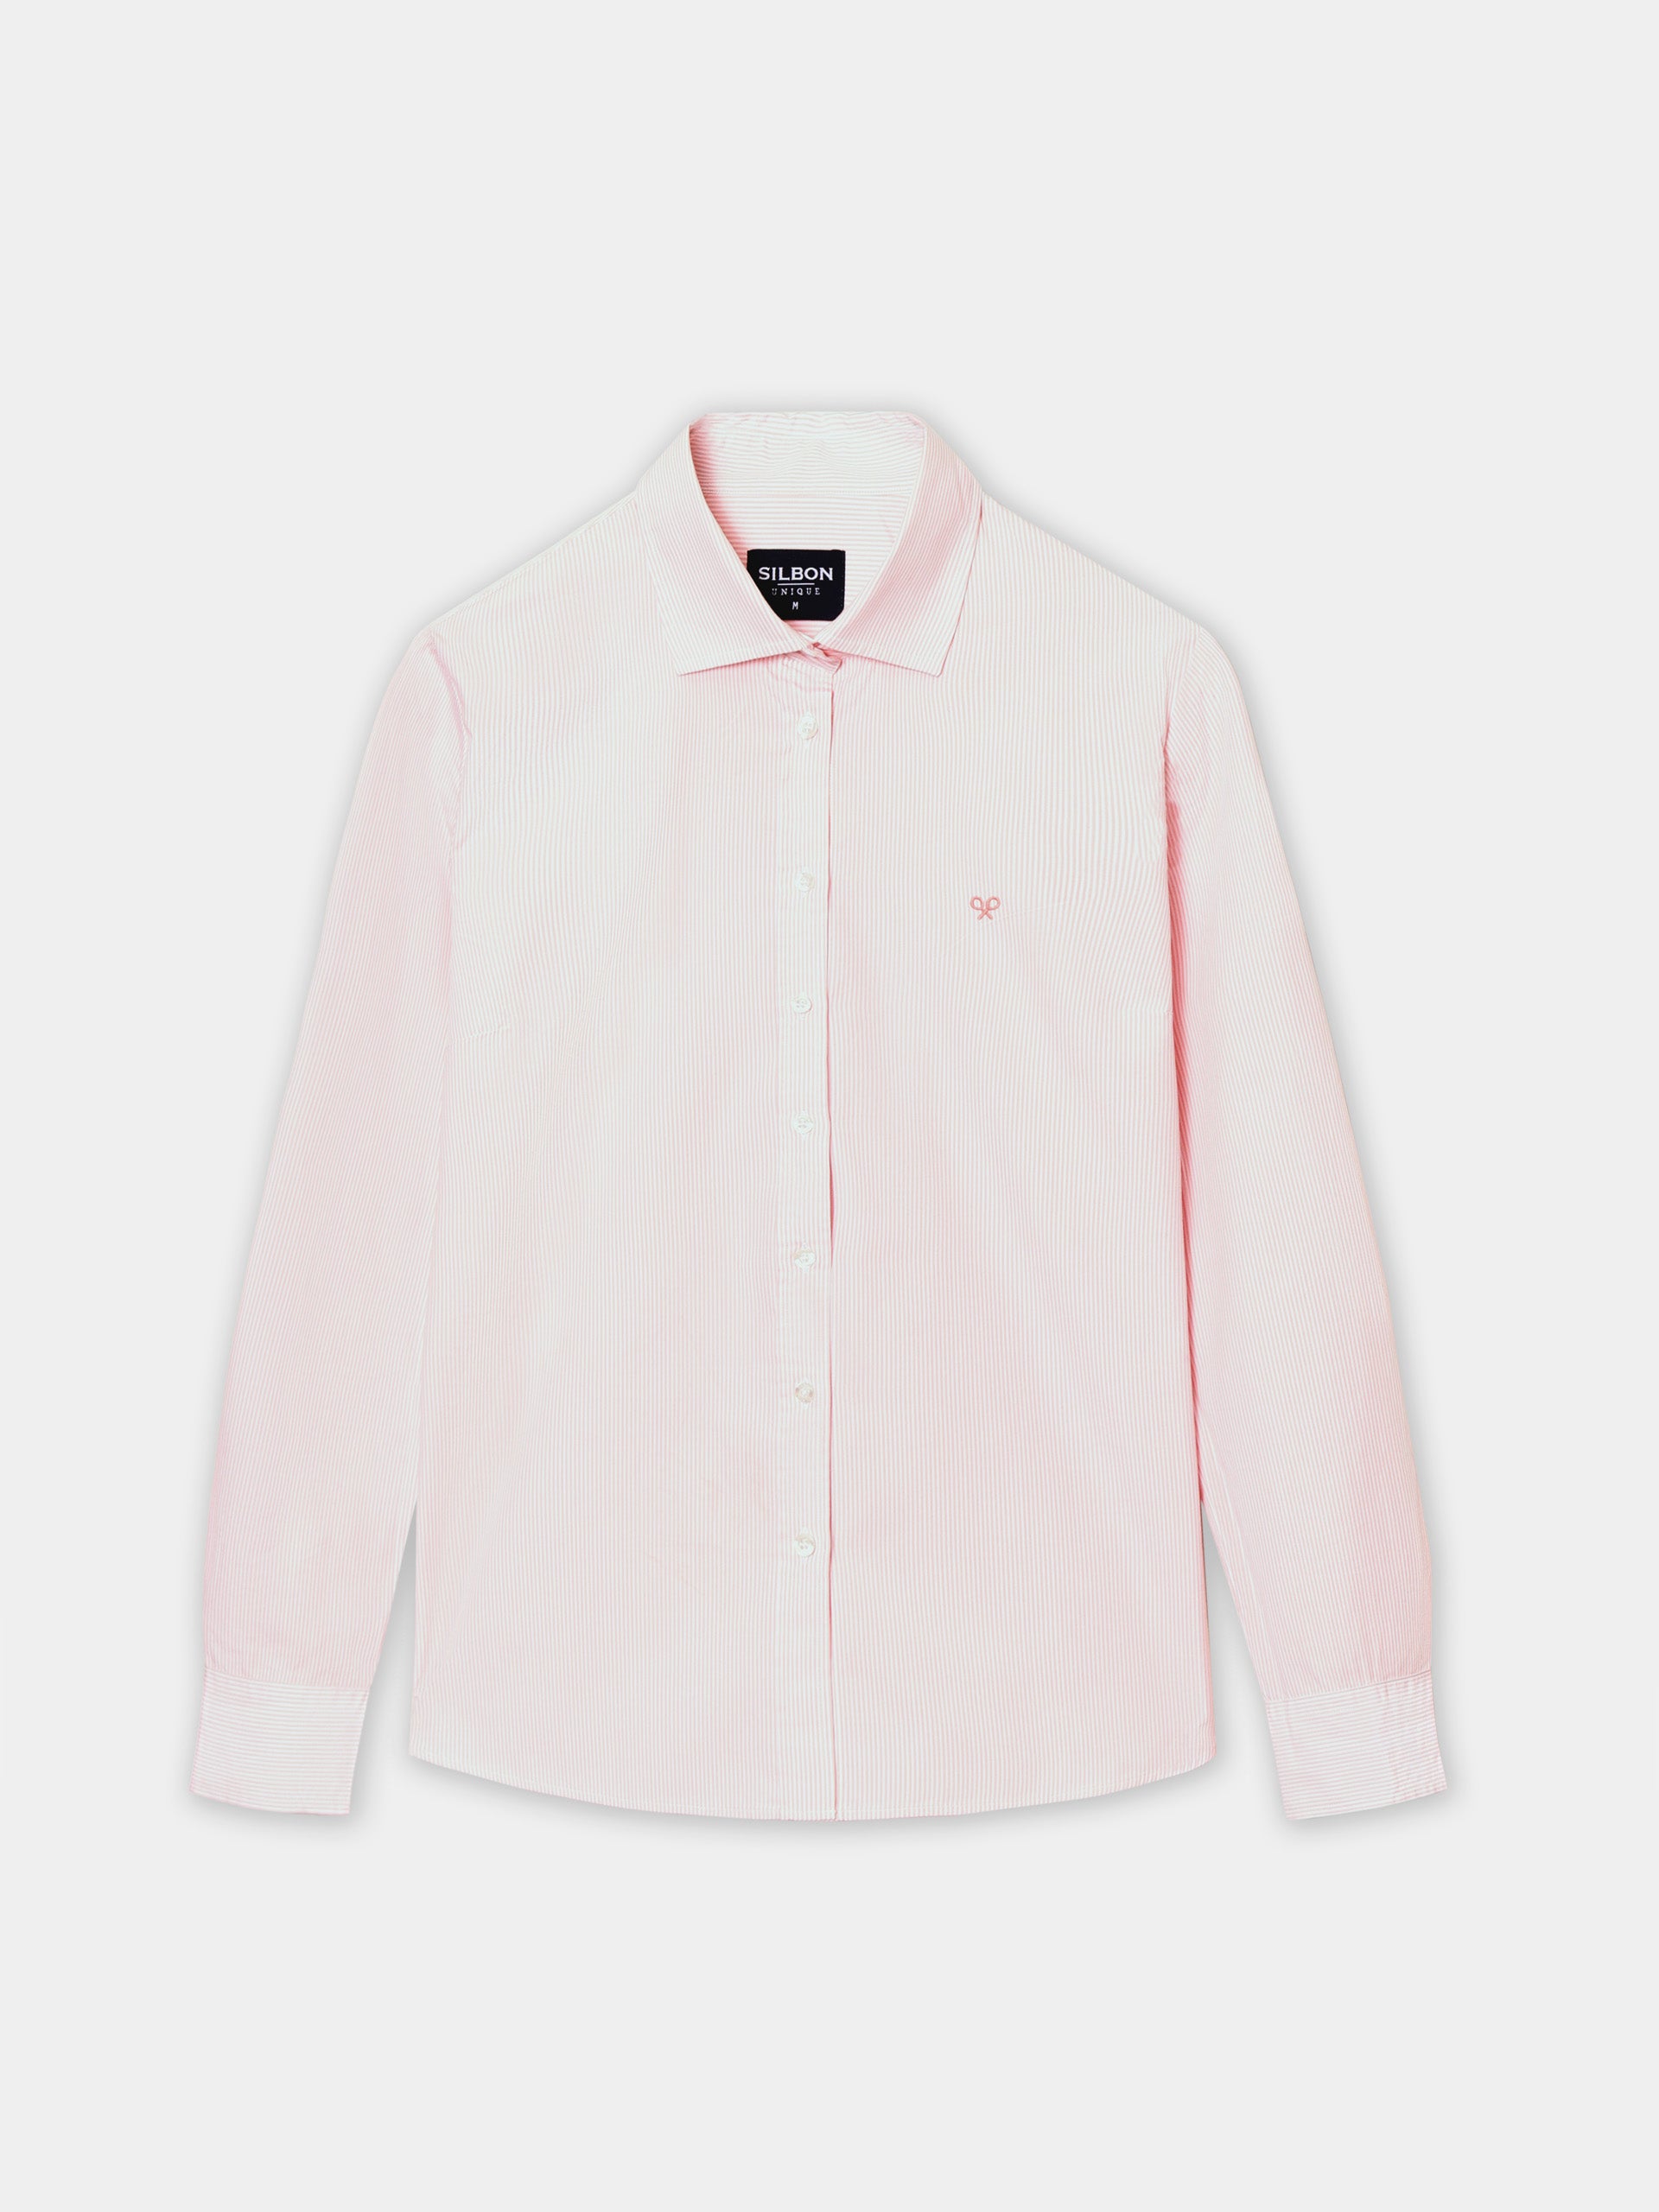 Women's unique pink striped shirt